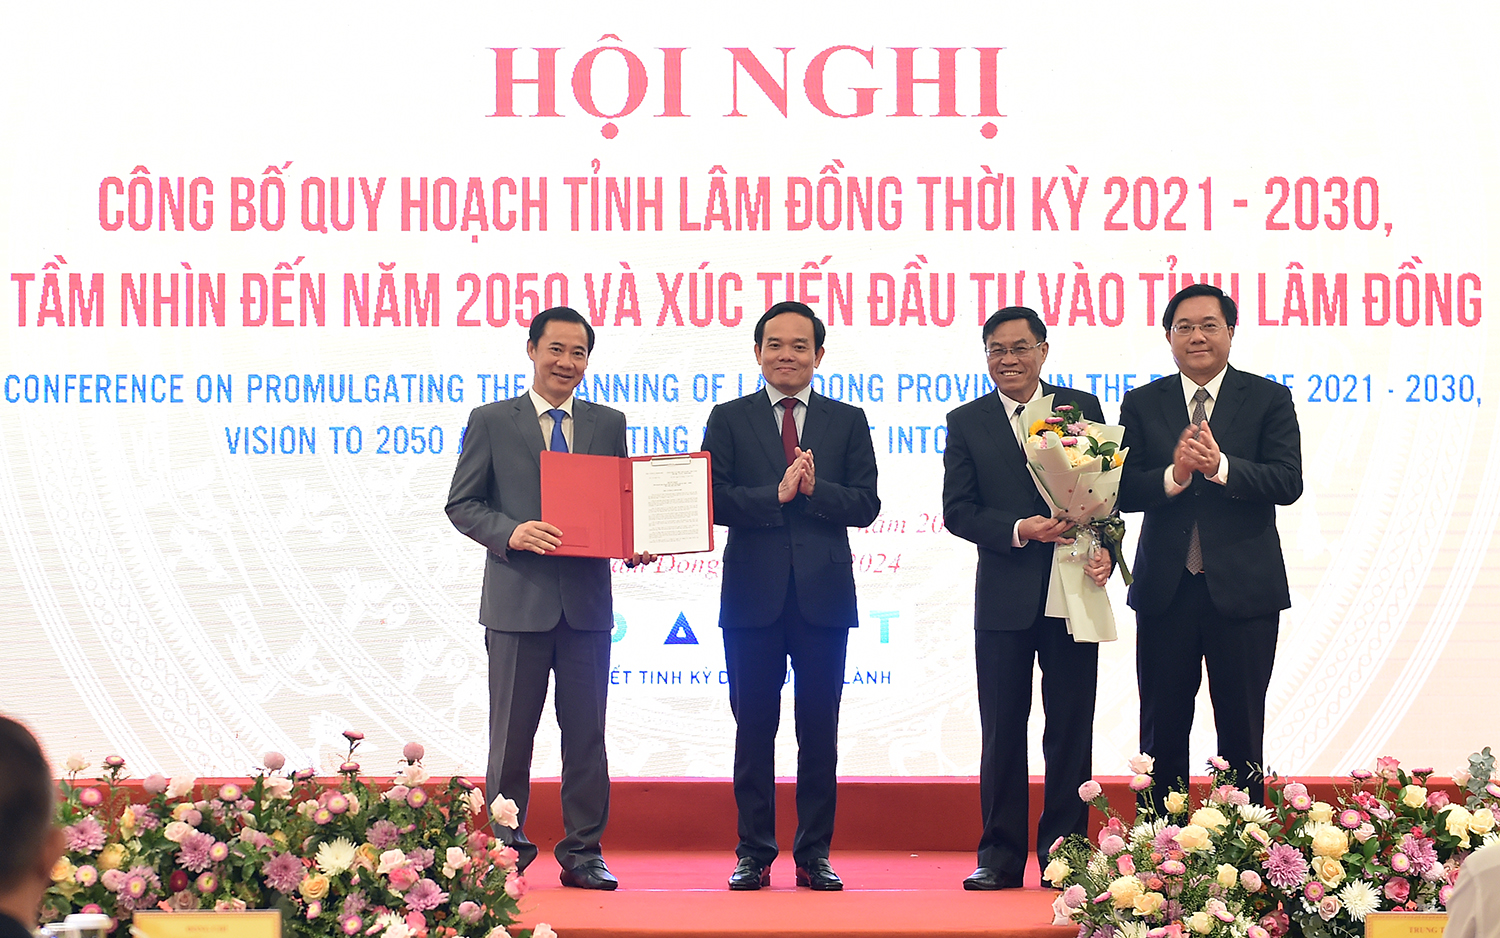 Phó Thủ tướng Trần Lưu Quang trao Quyết định của Thủ tướng Chính phủ phê duyệt Quy hoạch tỉnh Lâm Đồng thời kỳ 2021-2030, tầm nhìn đến năm 2050 cho lãnh đạo tỉnh Lâm Đồng - Ảnh: VGP/Hải Minh